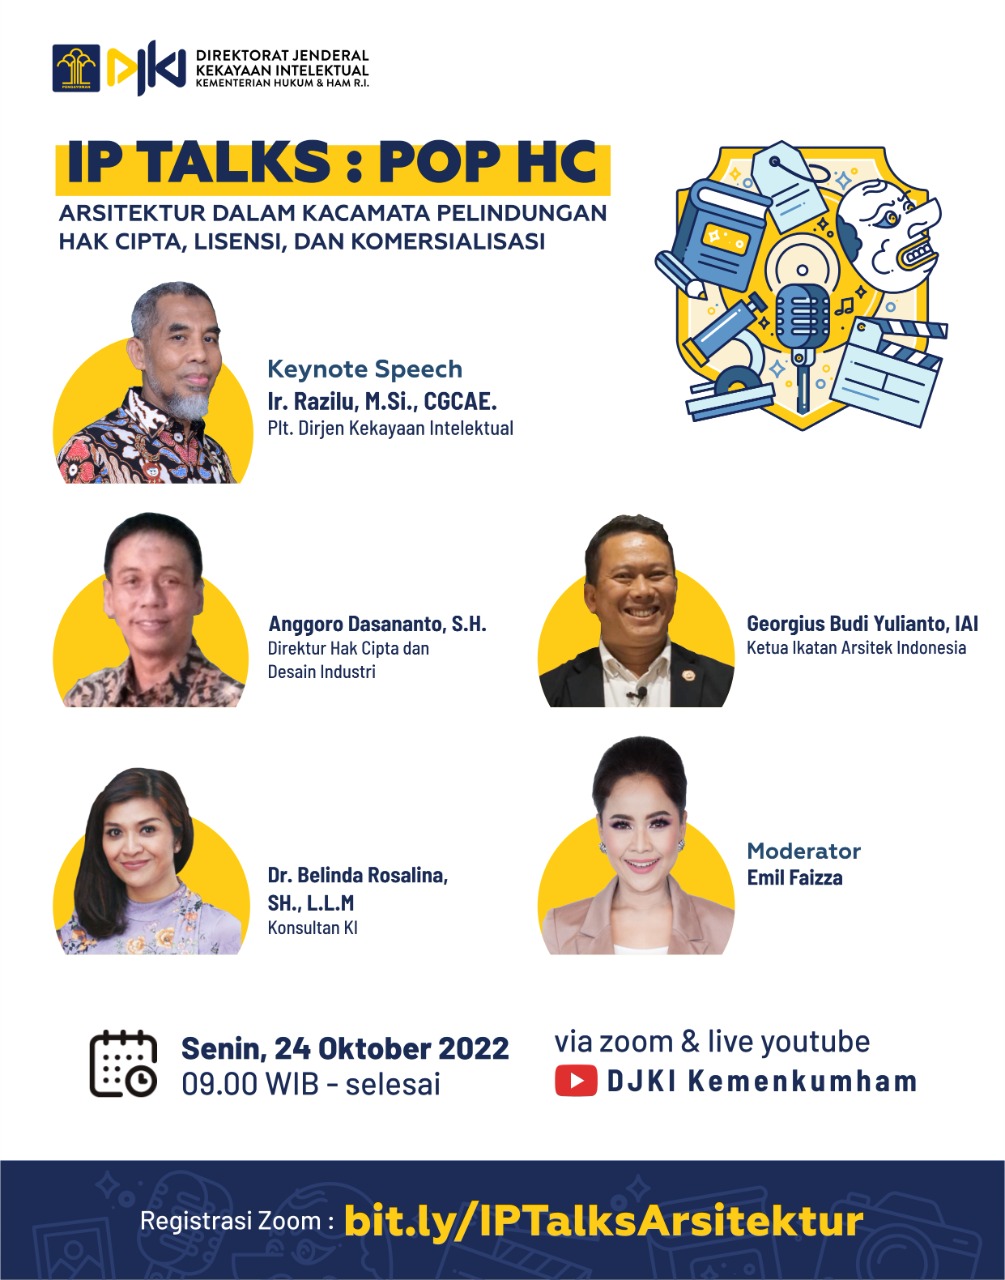 IP Talks : POP HC - Arsitektur dalam Kacamata Pelindungan Hak Cipta, Lisensi, dan Komersialisasi